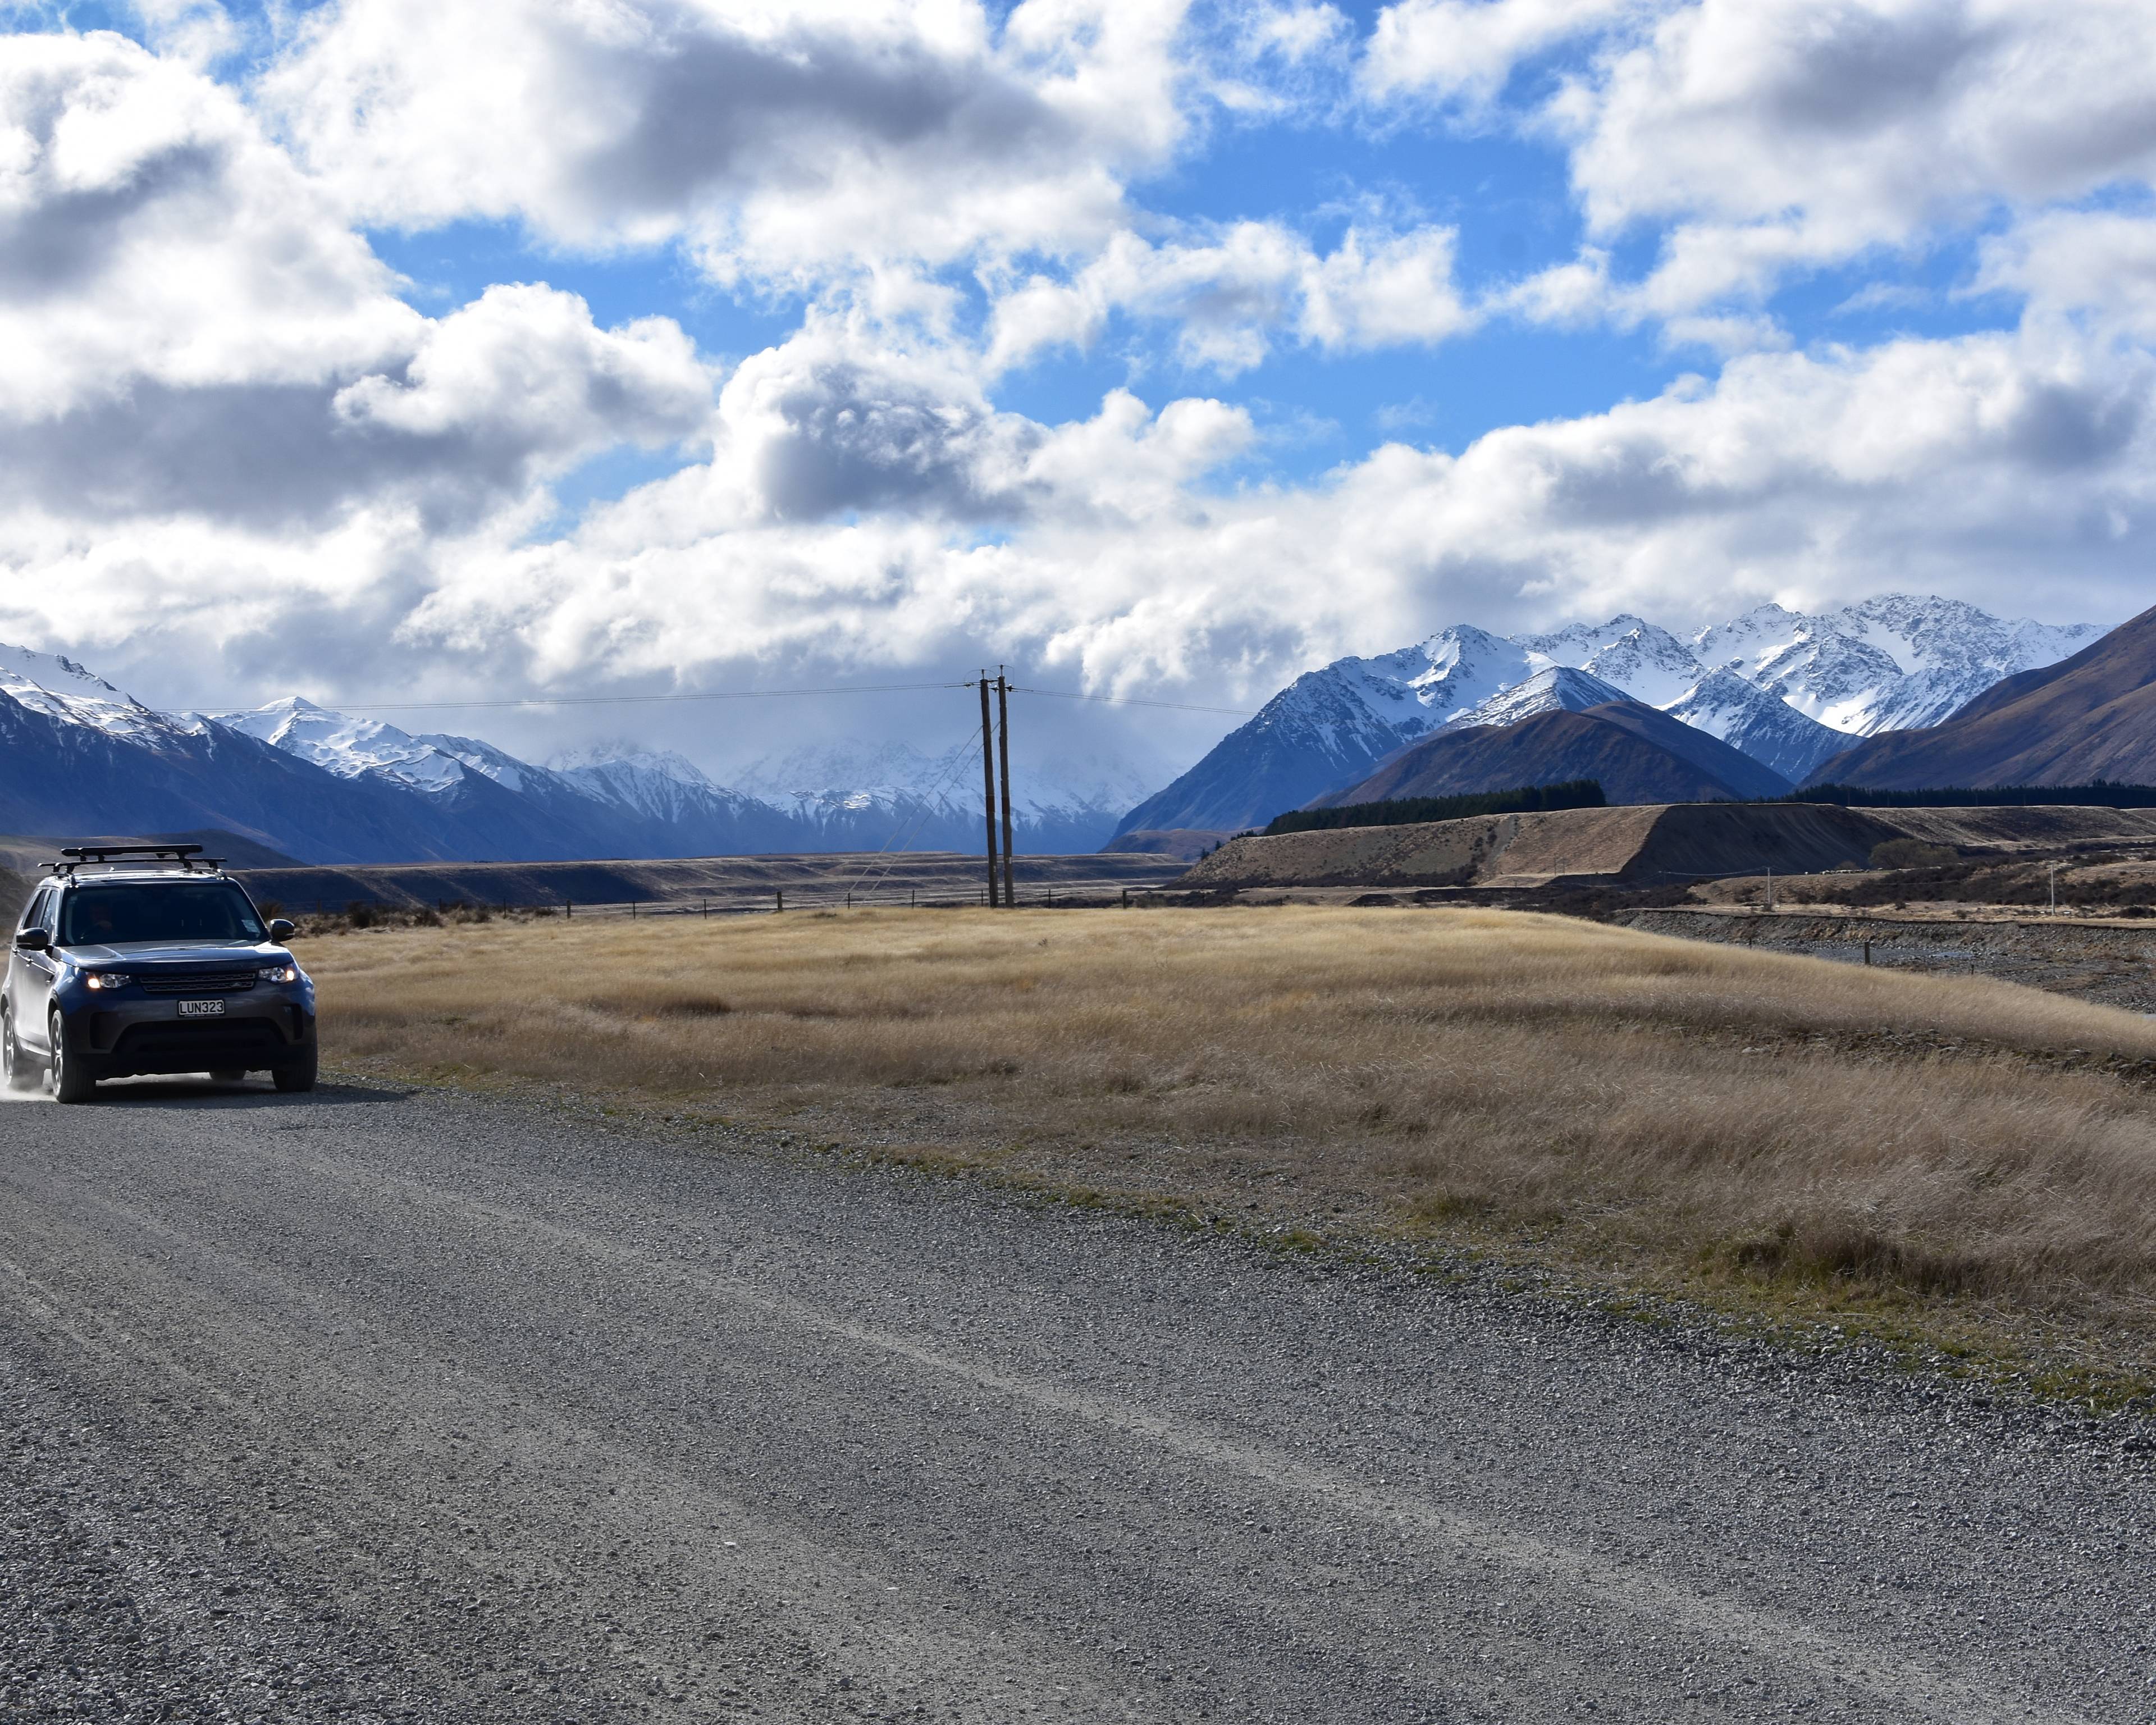 Roadtrip auf unbekannten Wegen des Kiwi-Landes